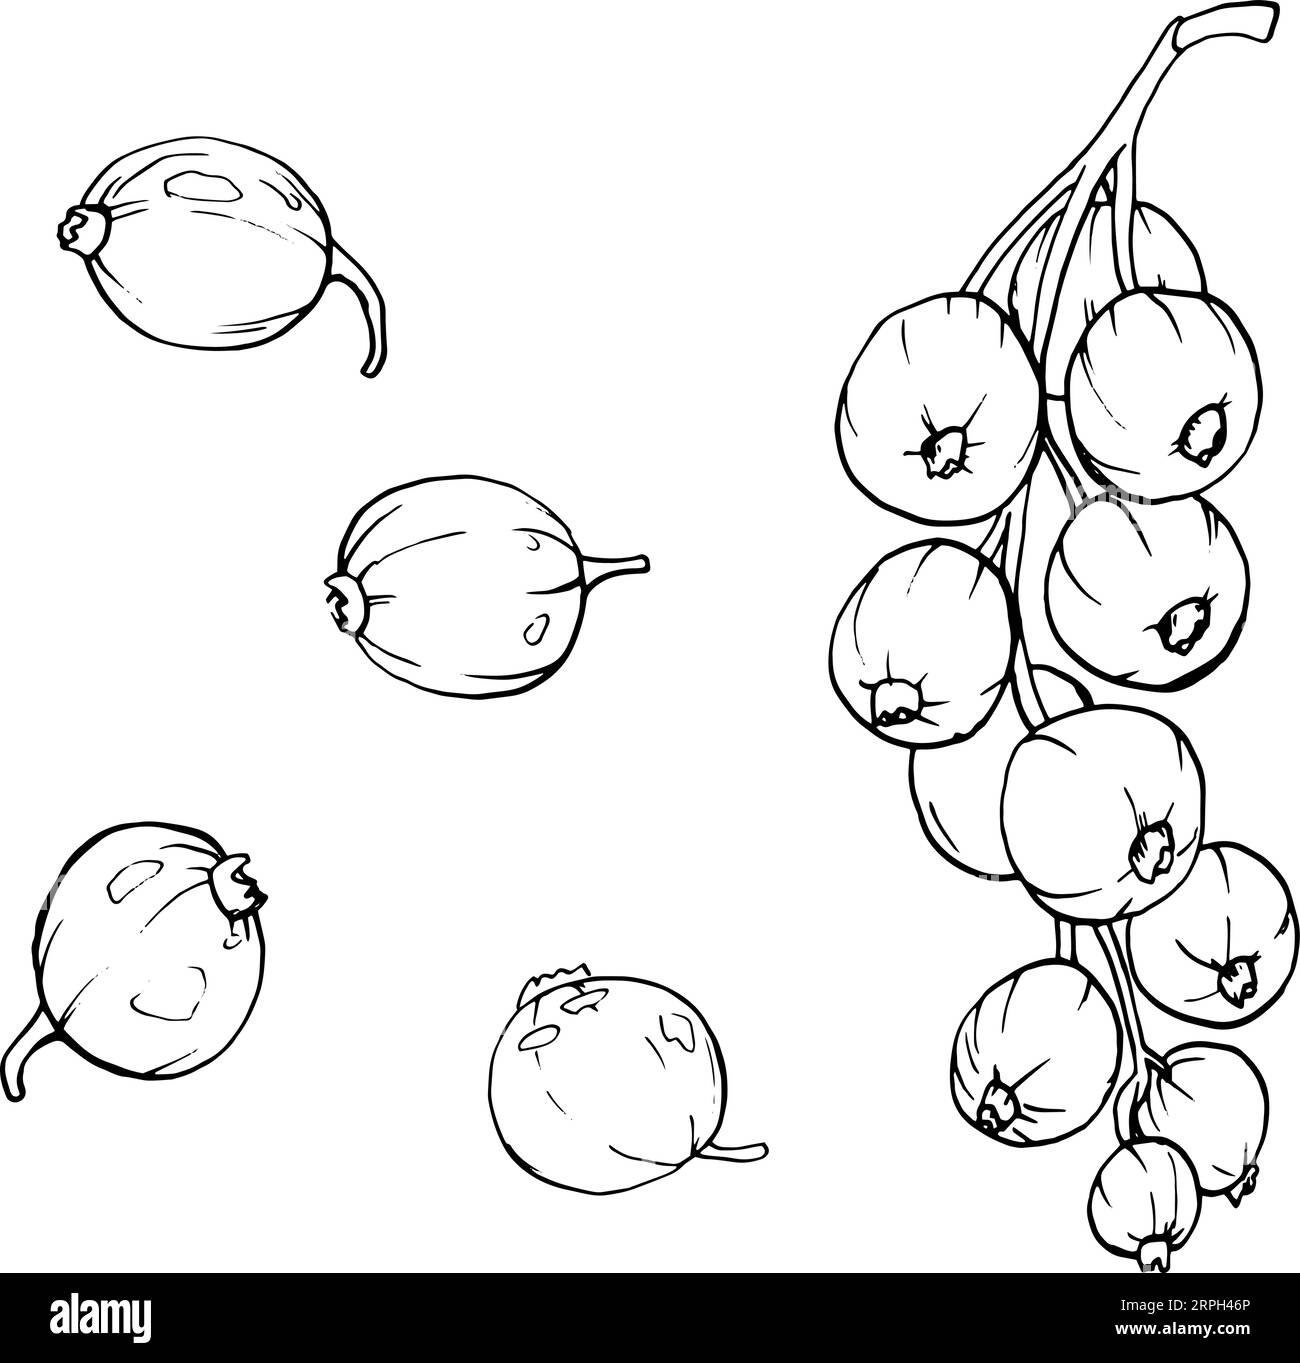 Baies de groseilles rouges isolées sur fond blanc. Illustration botanique vectorielle dessinée à la main. Clip art croquis de branches de baies. Fruit d'été gravé styl Illustration de Vecteur